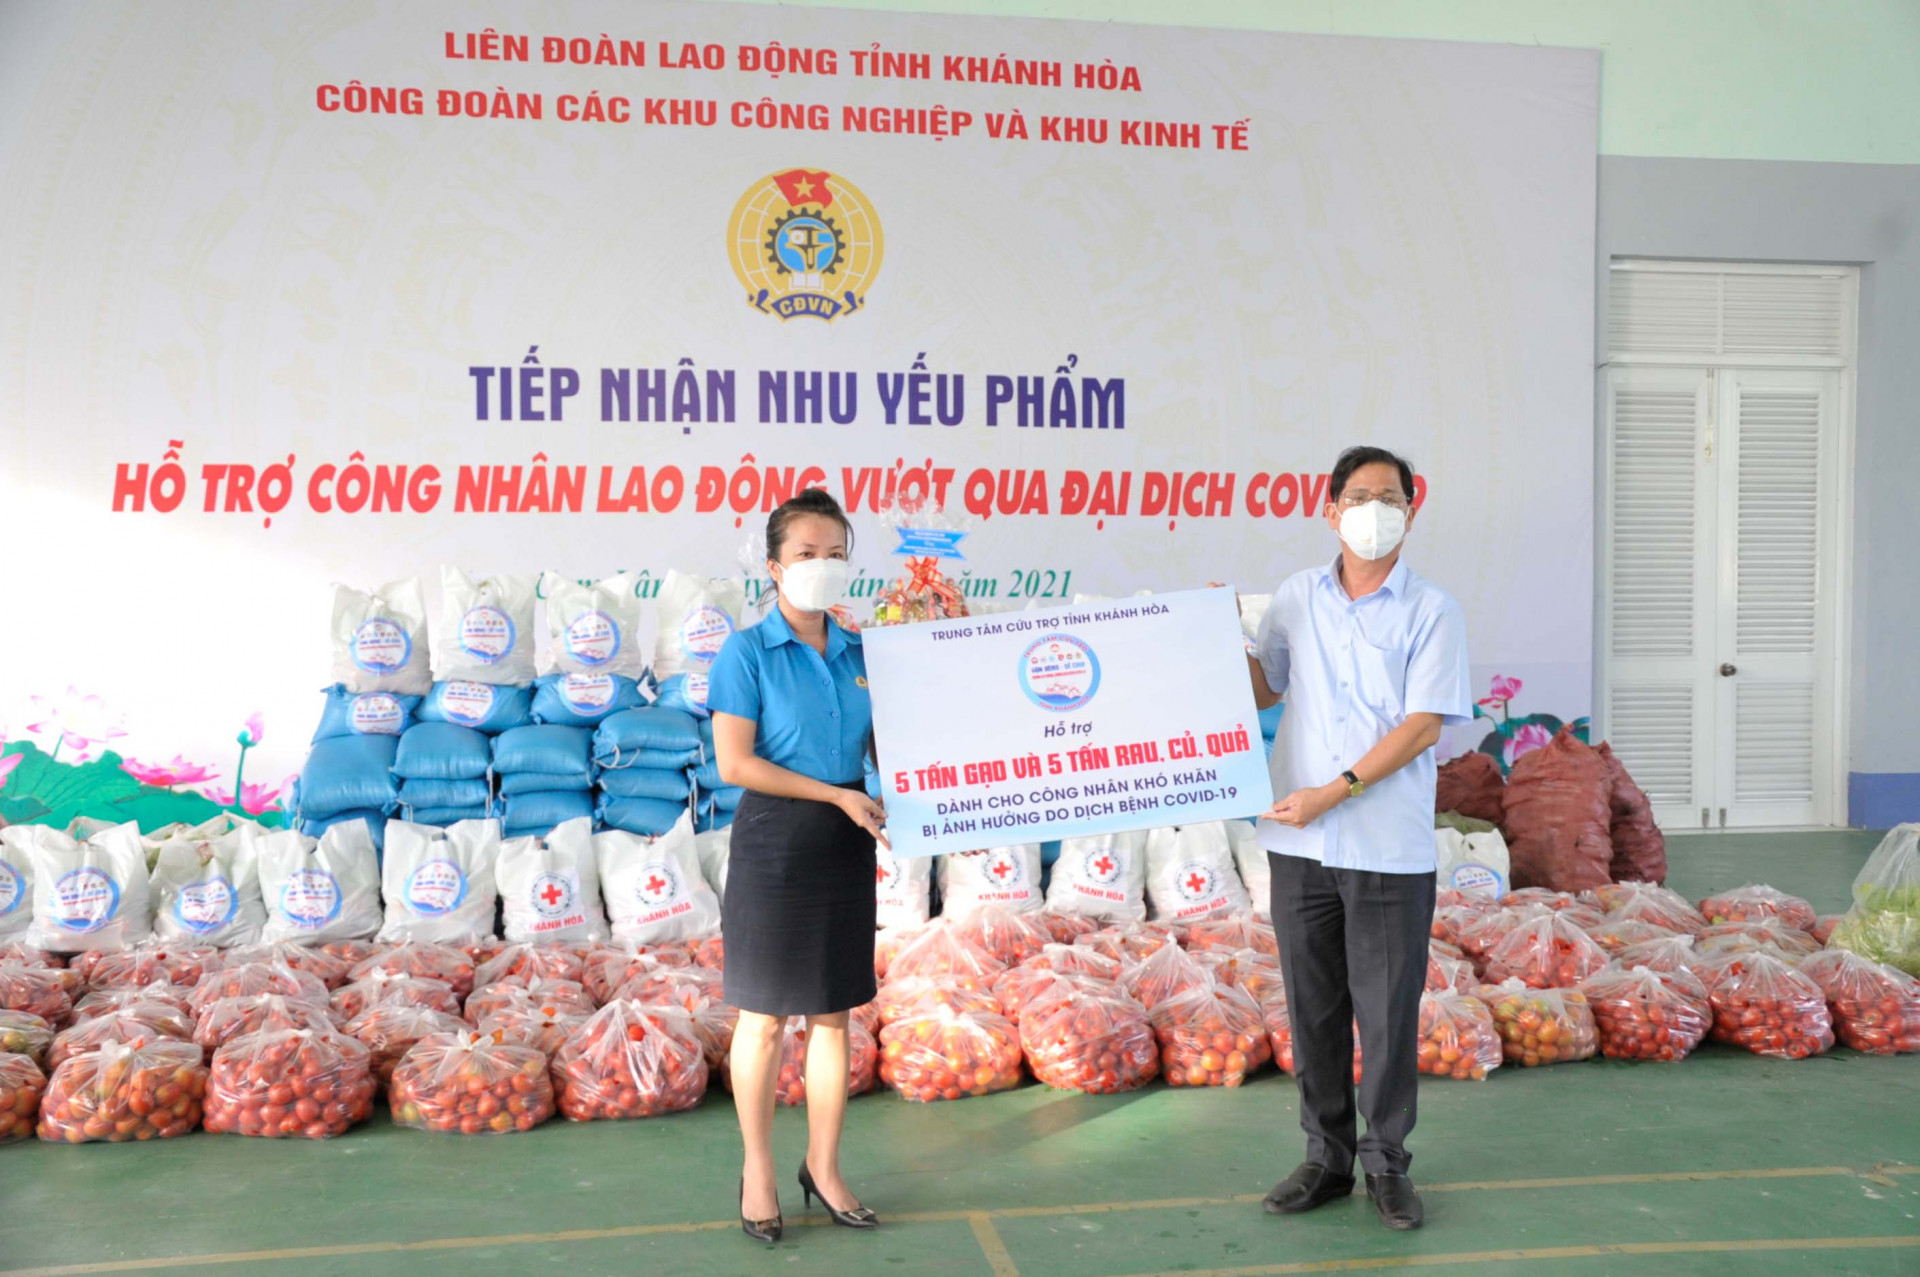 Đồng chí Nguyễn Tấn Tuân trao biểu trưng các phần hỗ trợ cho đại diện Công đoàn Các khu công nghiệp và khu kinh tế tỉnh để hỗ trợ người lao động